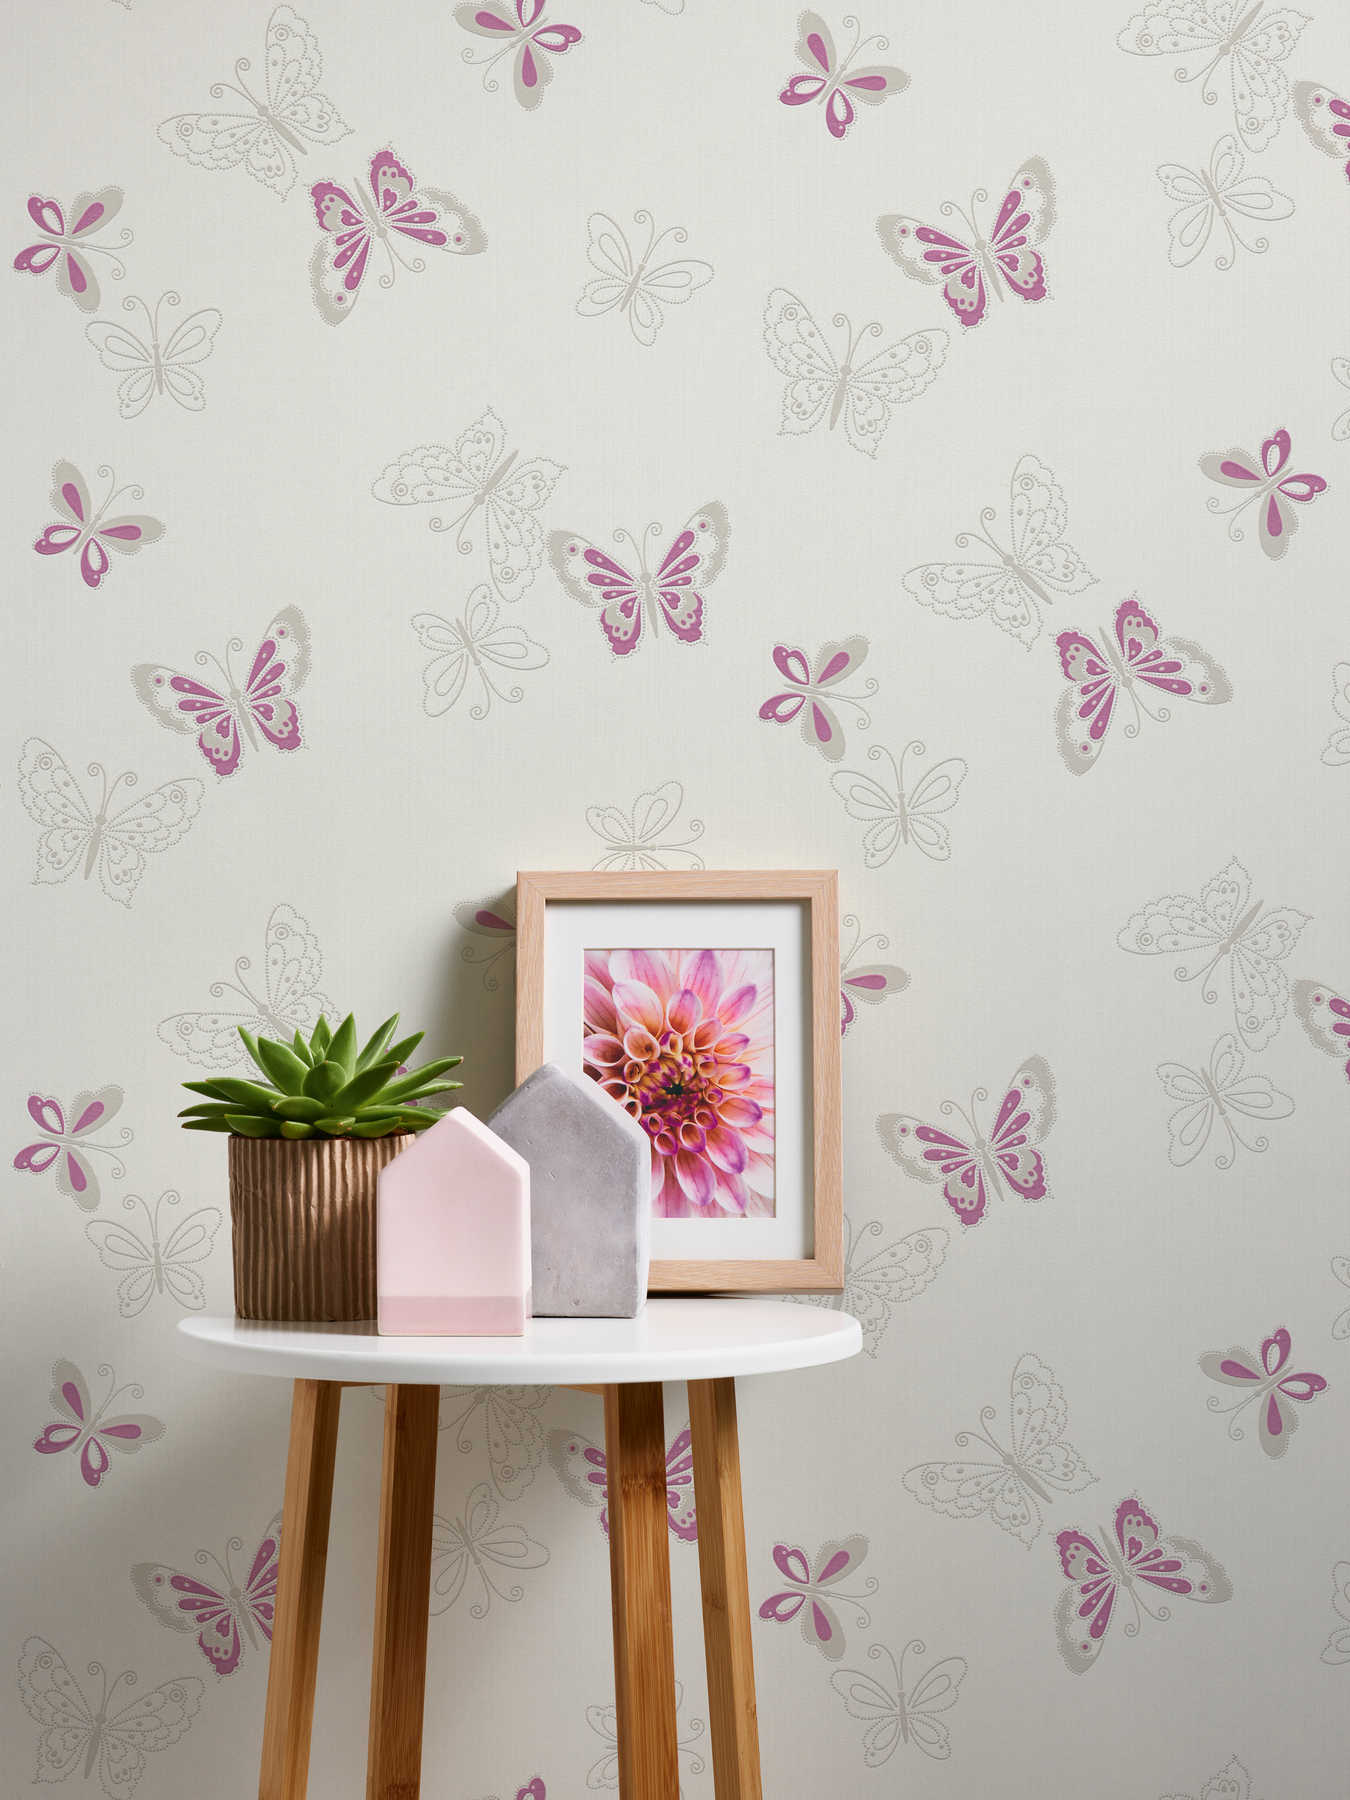             Nursery wallpaper with butterfly - beige, purple
        